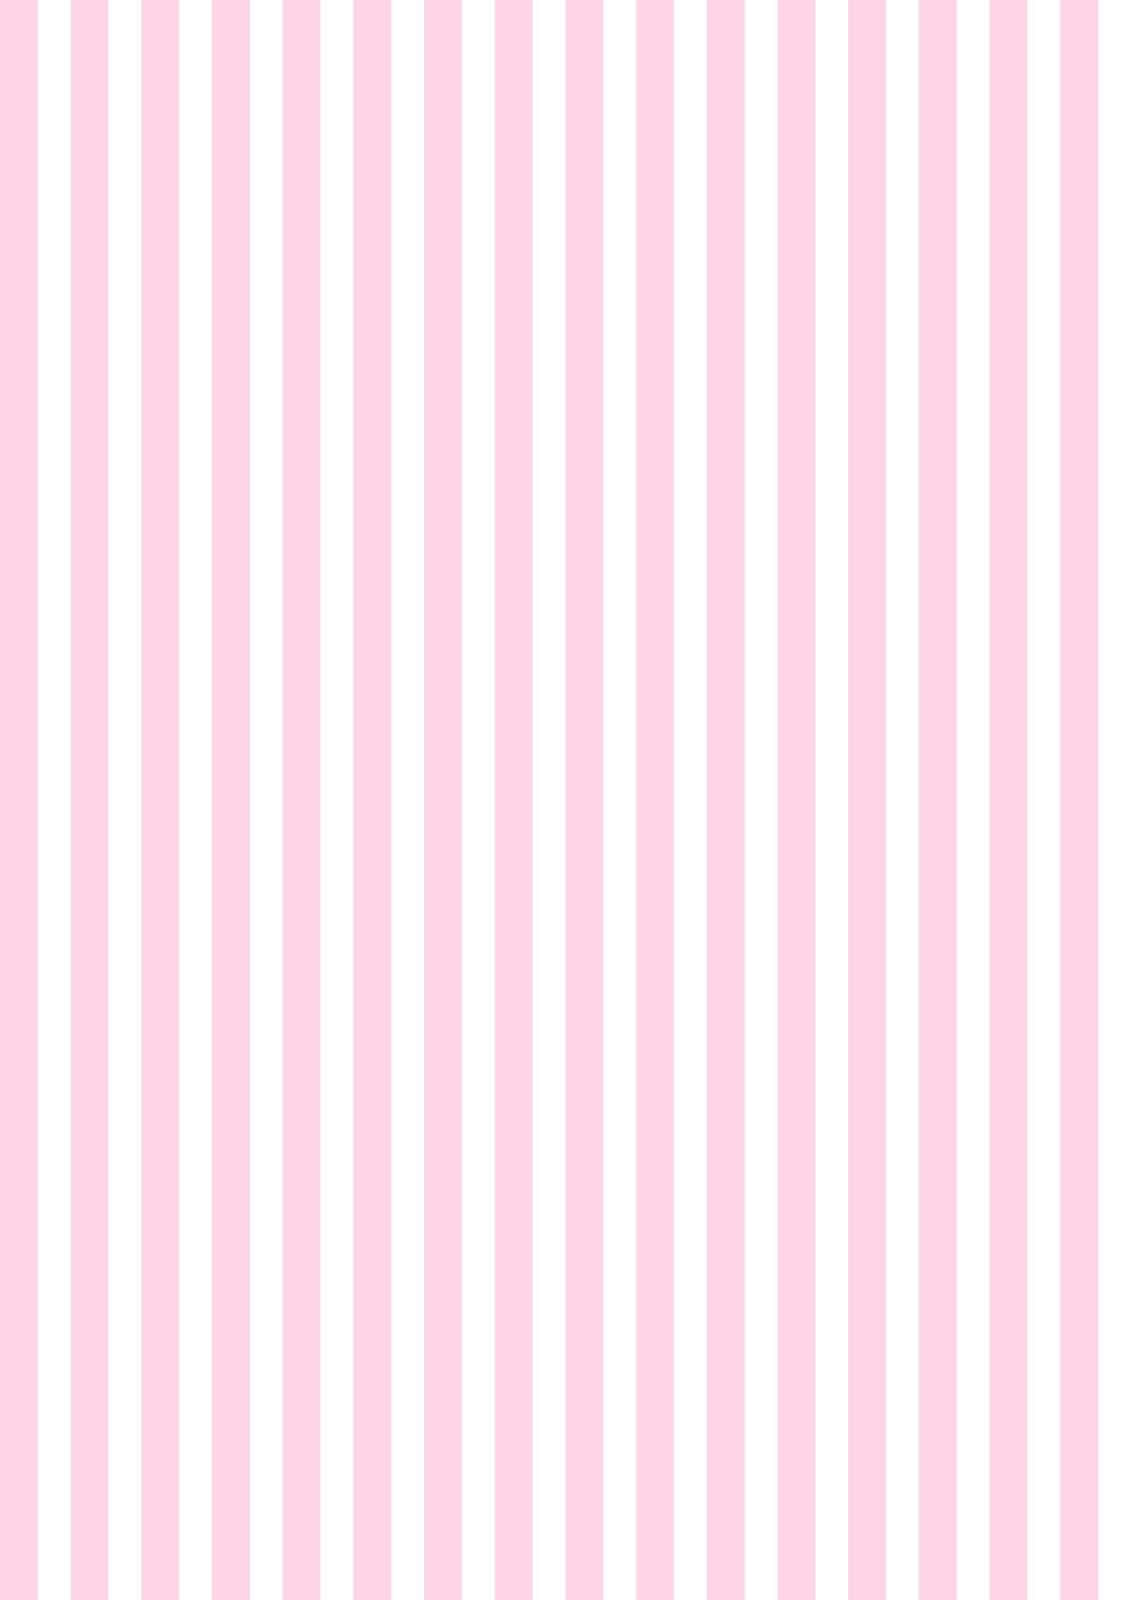 Unacombinazione Di Colori Rosa Tenue E Bianco Per Uno Sfondo Bellissimo.